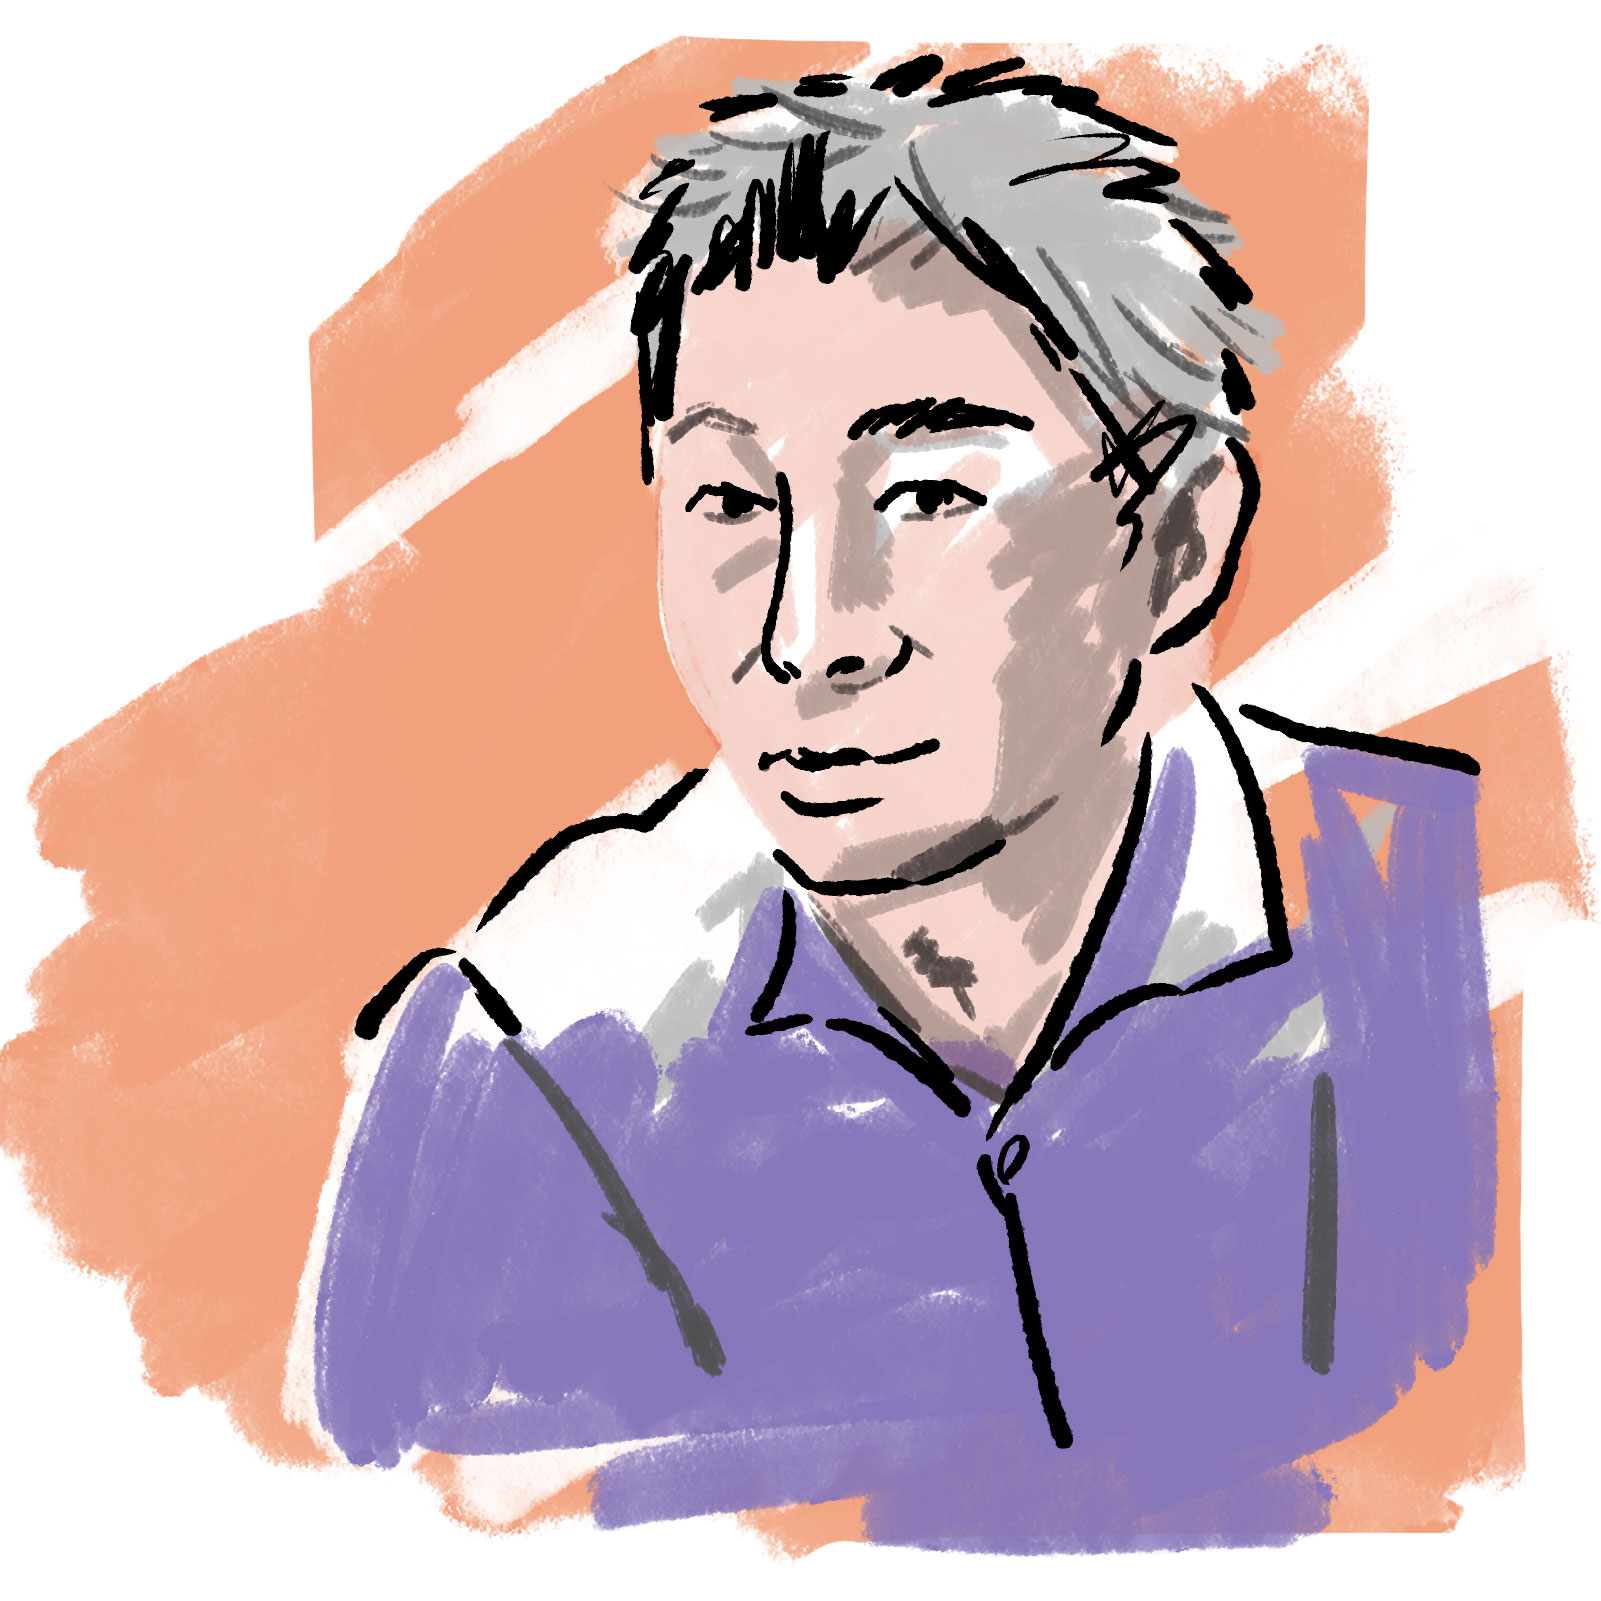 NTTコミュニケーション科学基礎研究所人間情報研究部 上席特別研究員 渡邊 淳司を描いた顔写真のイラスト